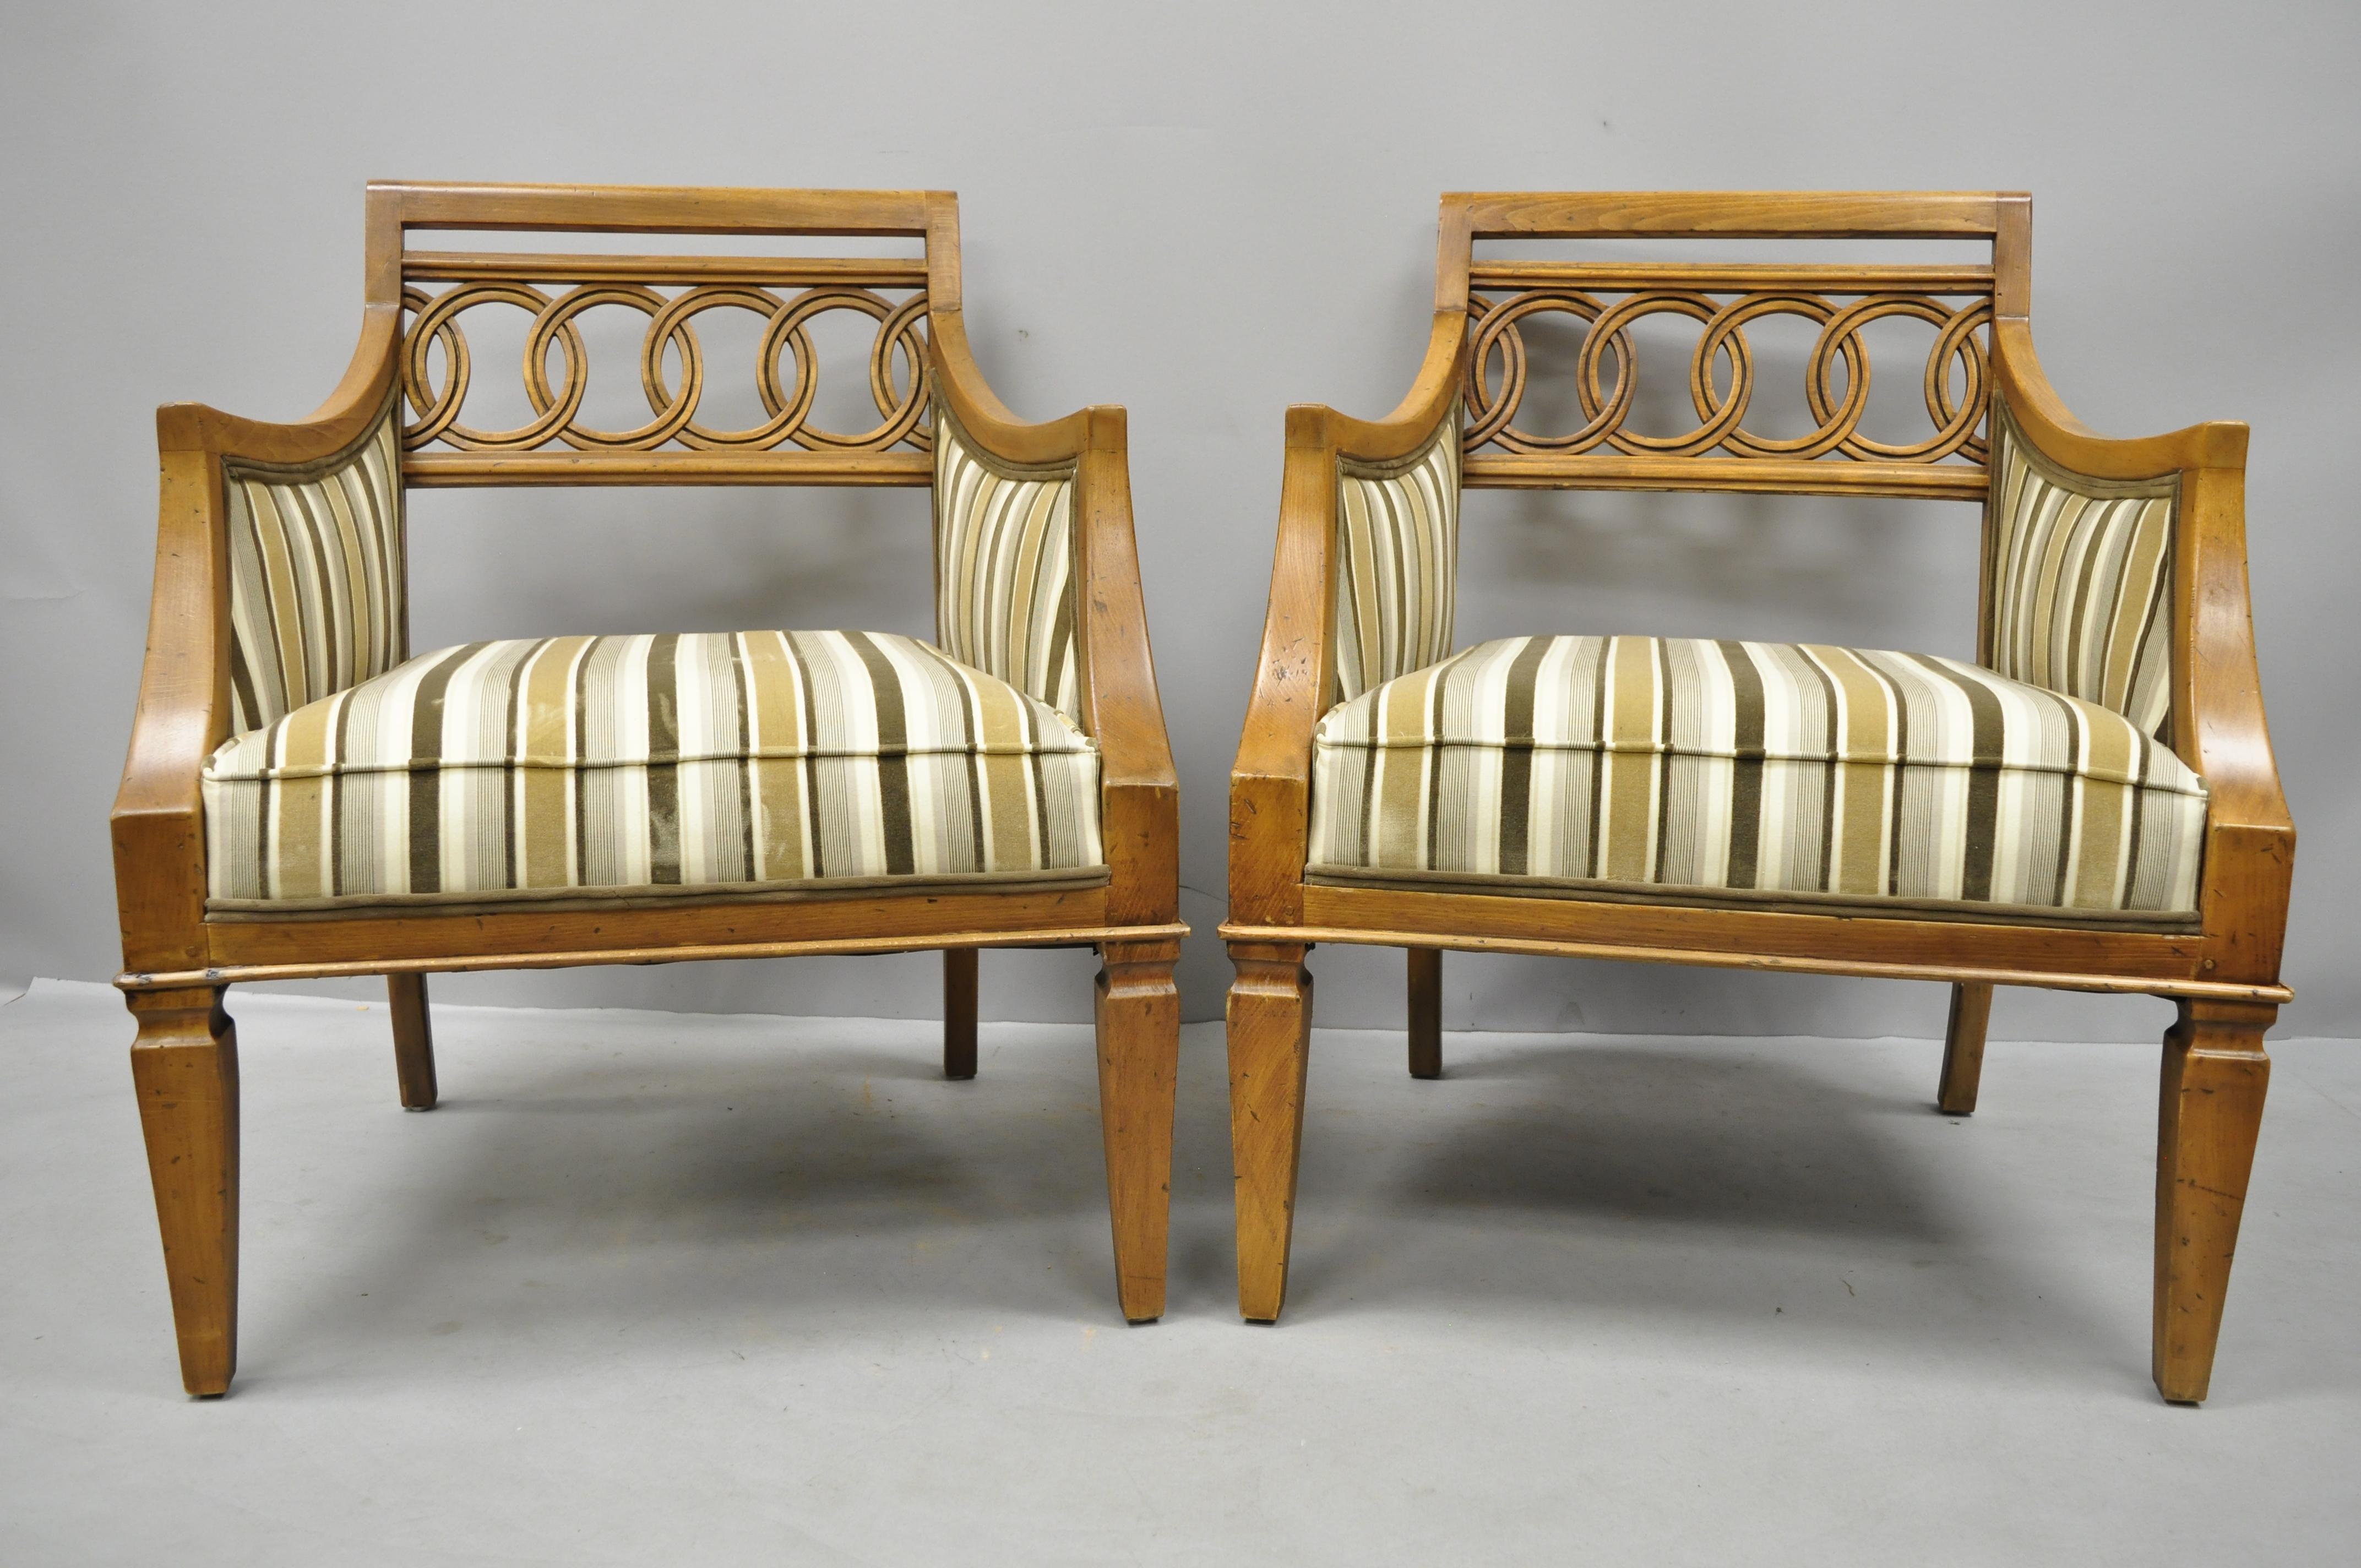 Ein Paar geschnitzte Spiralsessel im französischen Hollywood-Regency-Stil. Gestreifte gepolsterte Sitze, geschnitzte Rückenlehnen, Massivholzkonstruktion, schöne Holzmaserung, gealtertes Finish, verjüngte Beine, schlanke skulpturale Form, um Ende